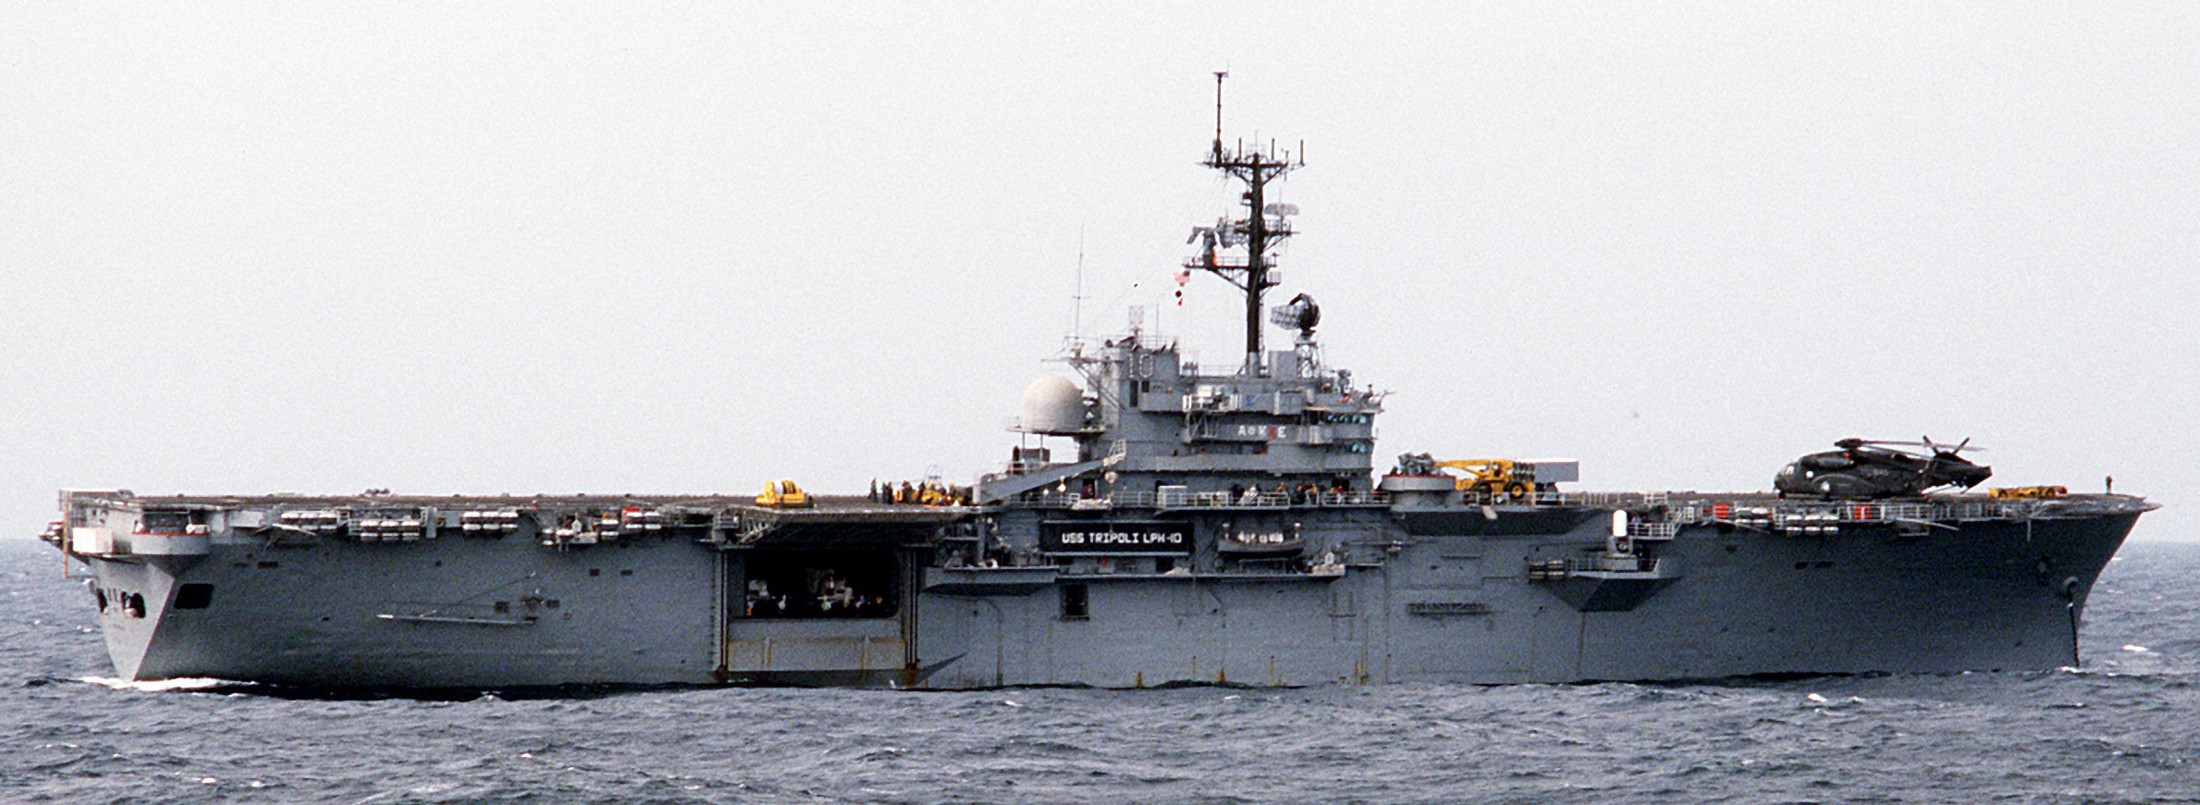 lph-10 uss tripoli iwo jima class amphibious assault ship landing platform helicopter us navy 12 gulf of aman